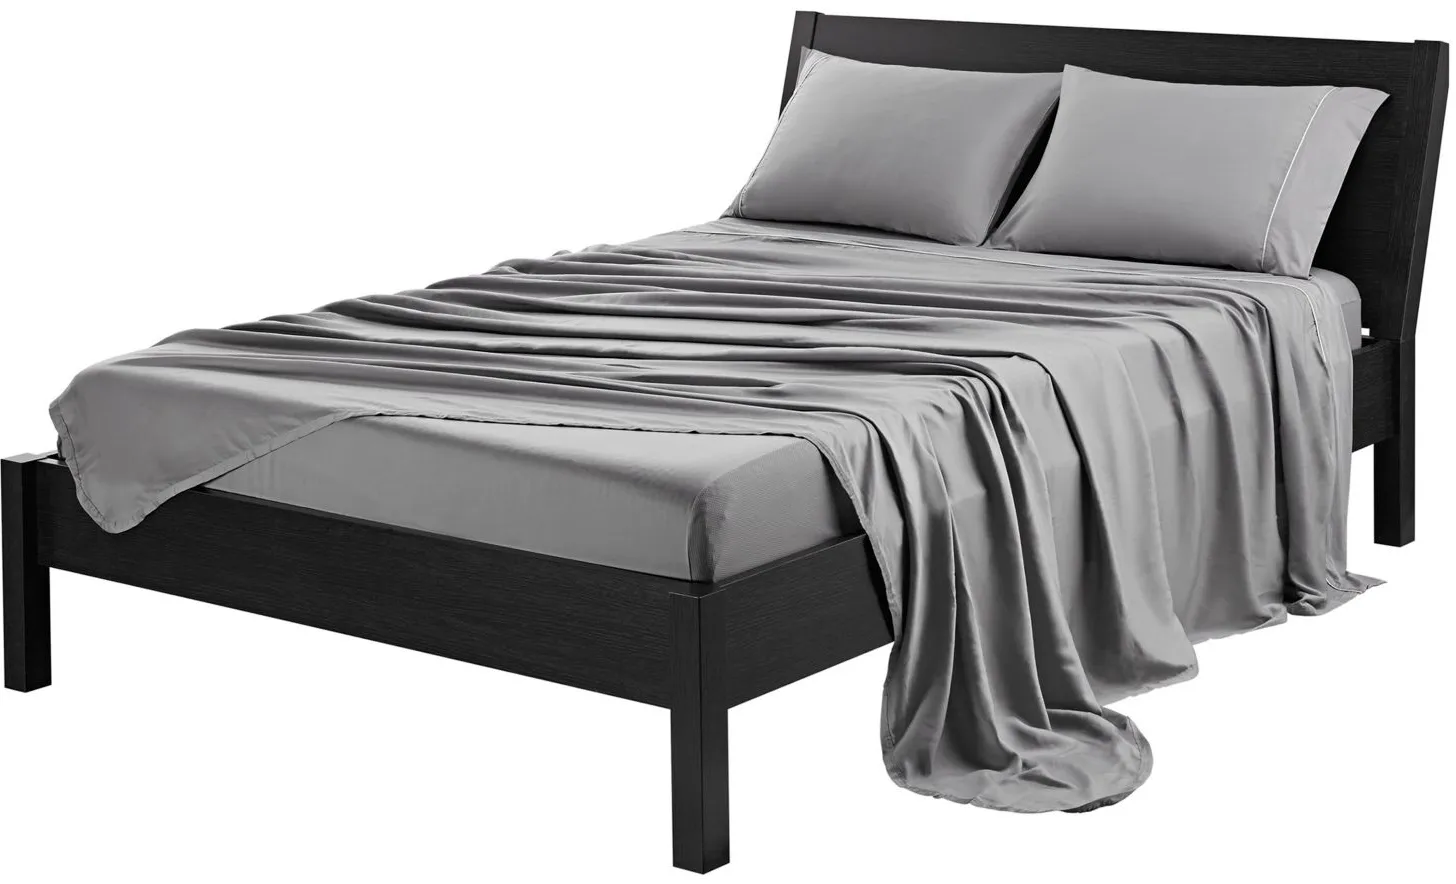 BEDGEAR Hyper-Cotton Bed Sheets in Gray by Bedgear